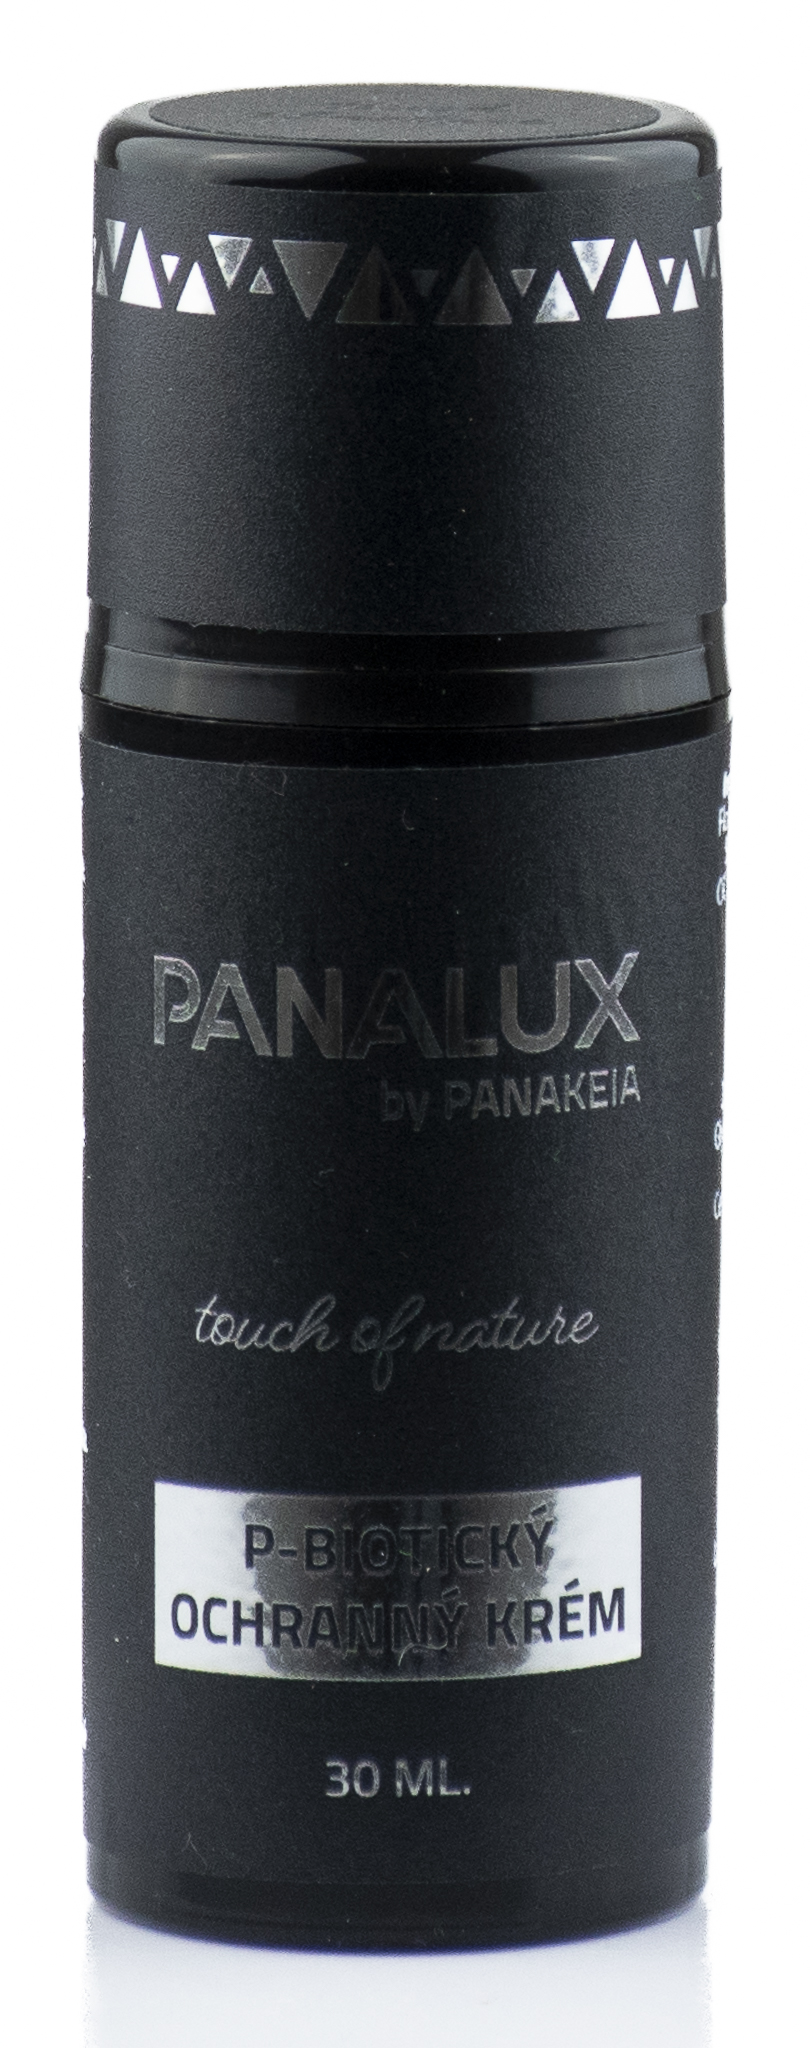 PANALUX by PANAKEIA P-Biotický ochranný krém 30ml